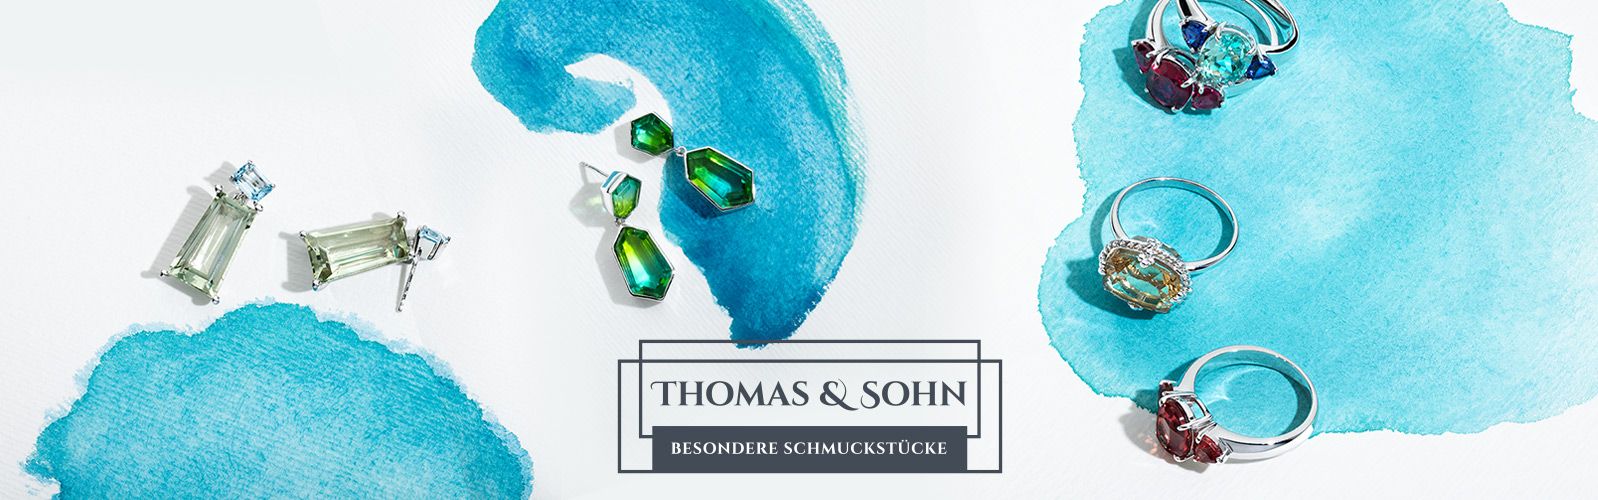 THOMAS & SOHN Edelsteinschmuck